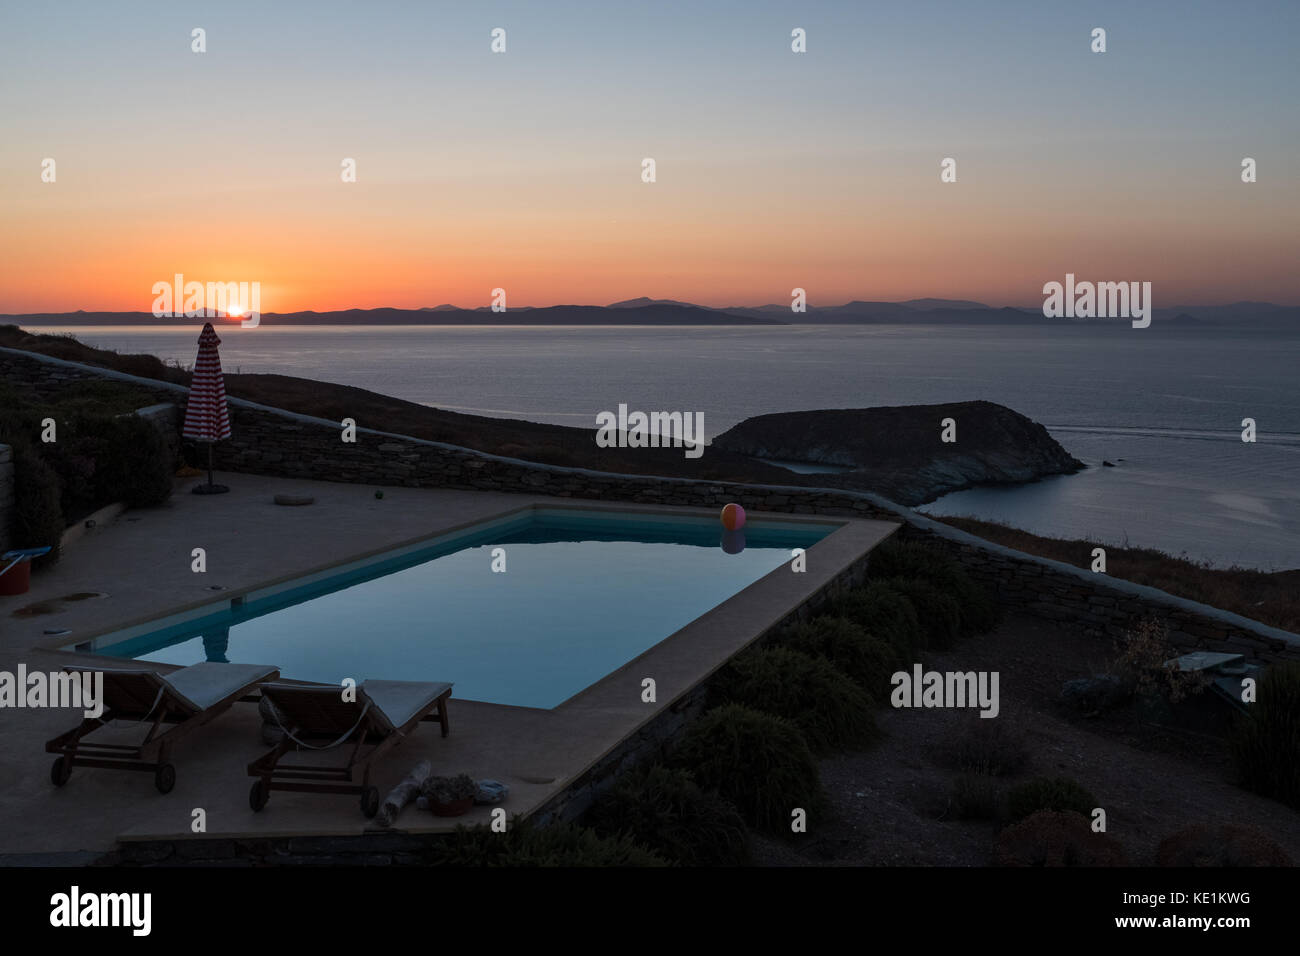 Swimming pool overlooking Aegean Sea at sunset, Kea, Grrece Stock Photo